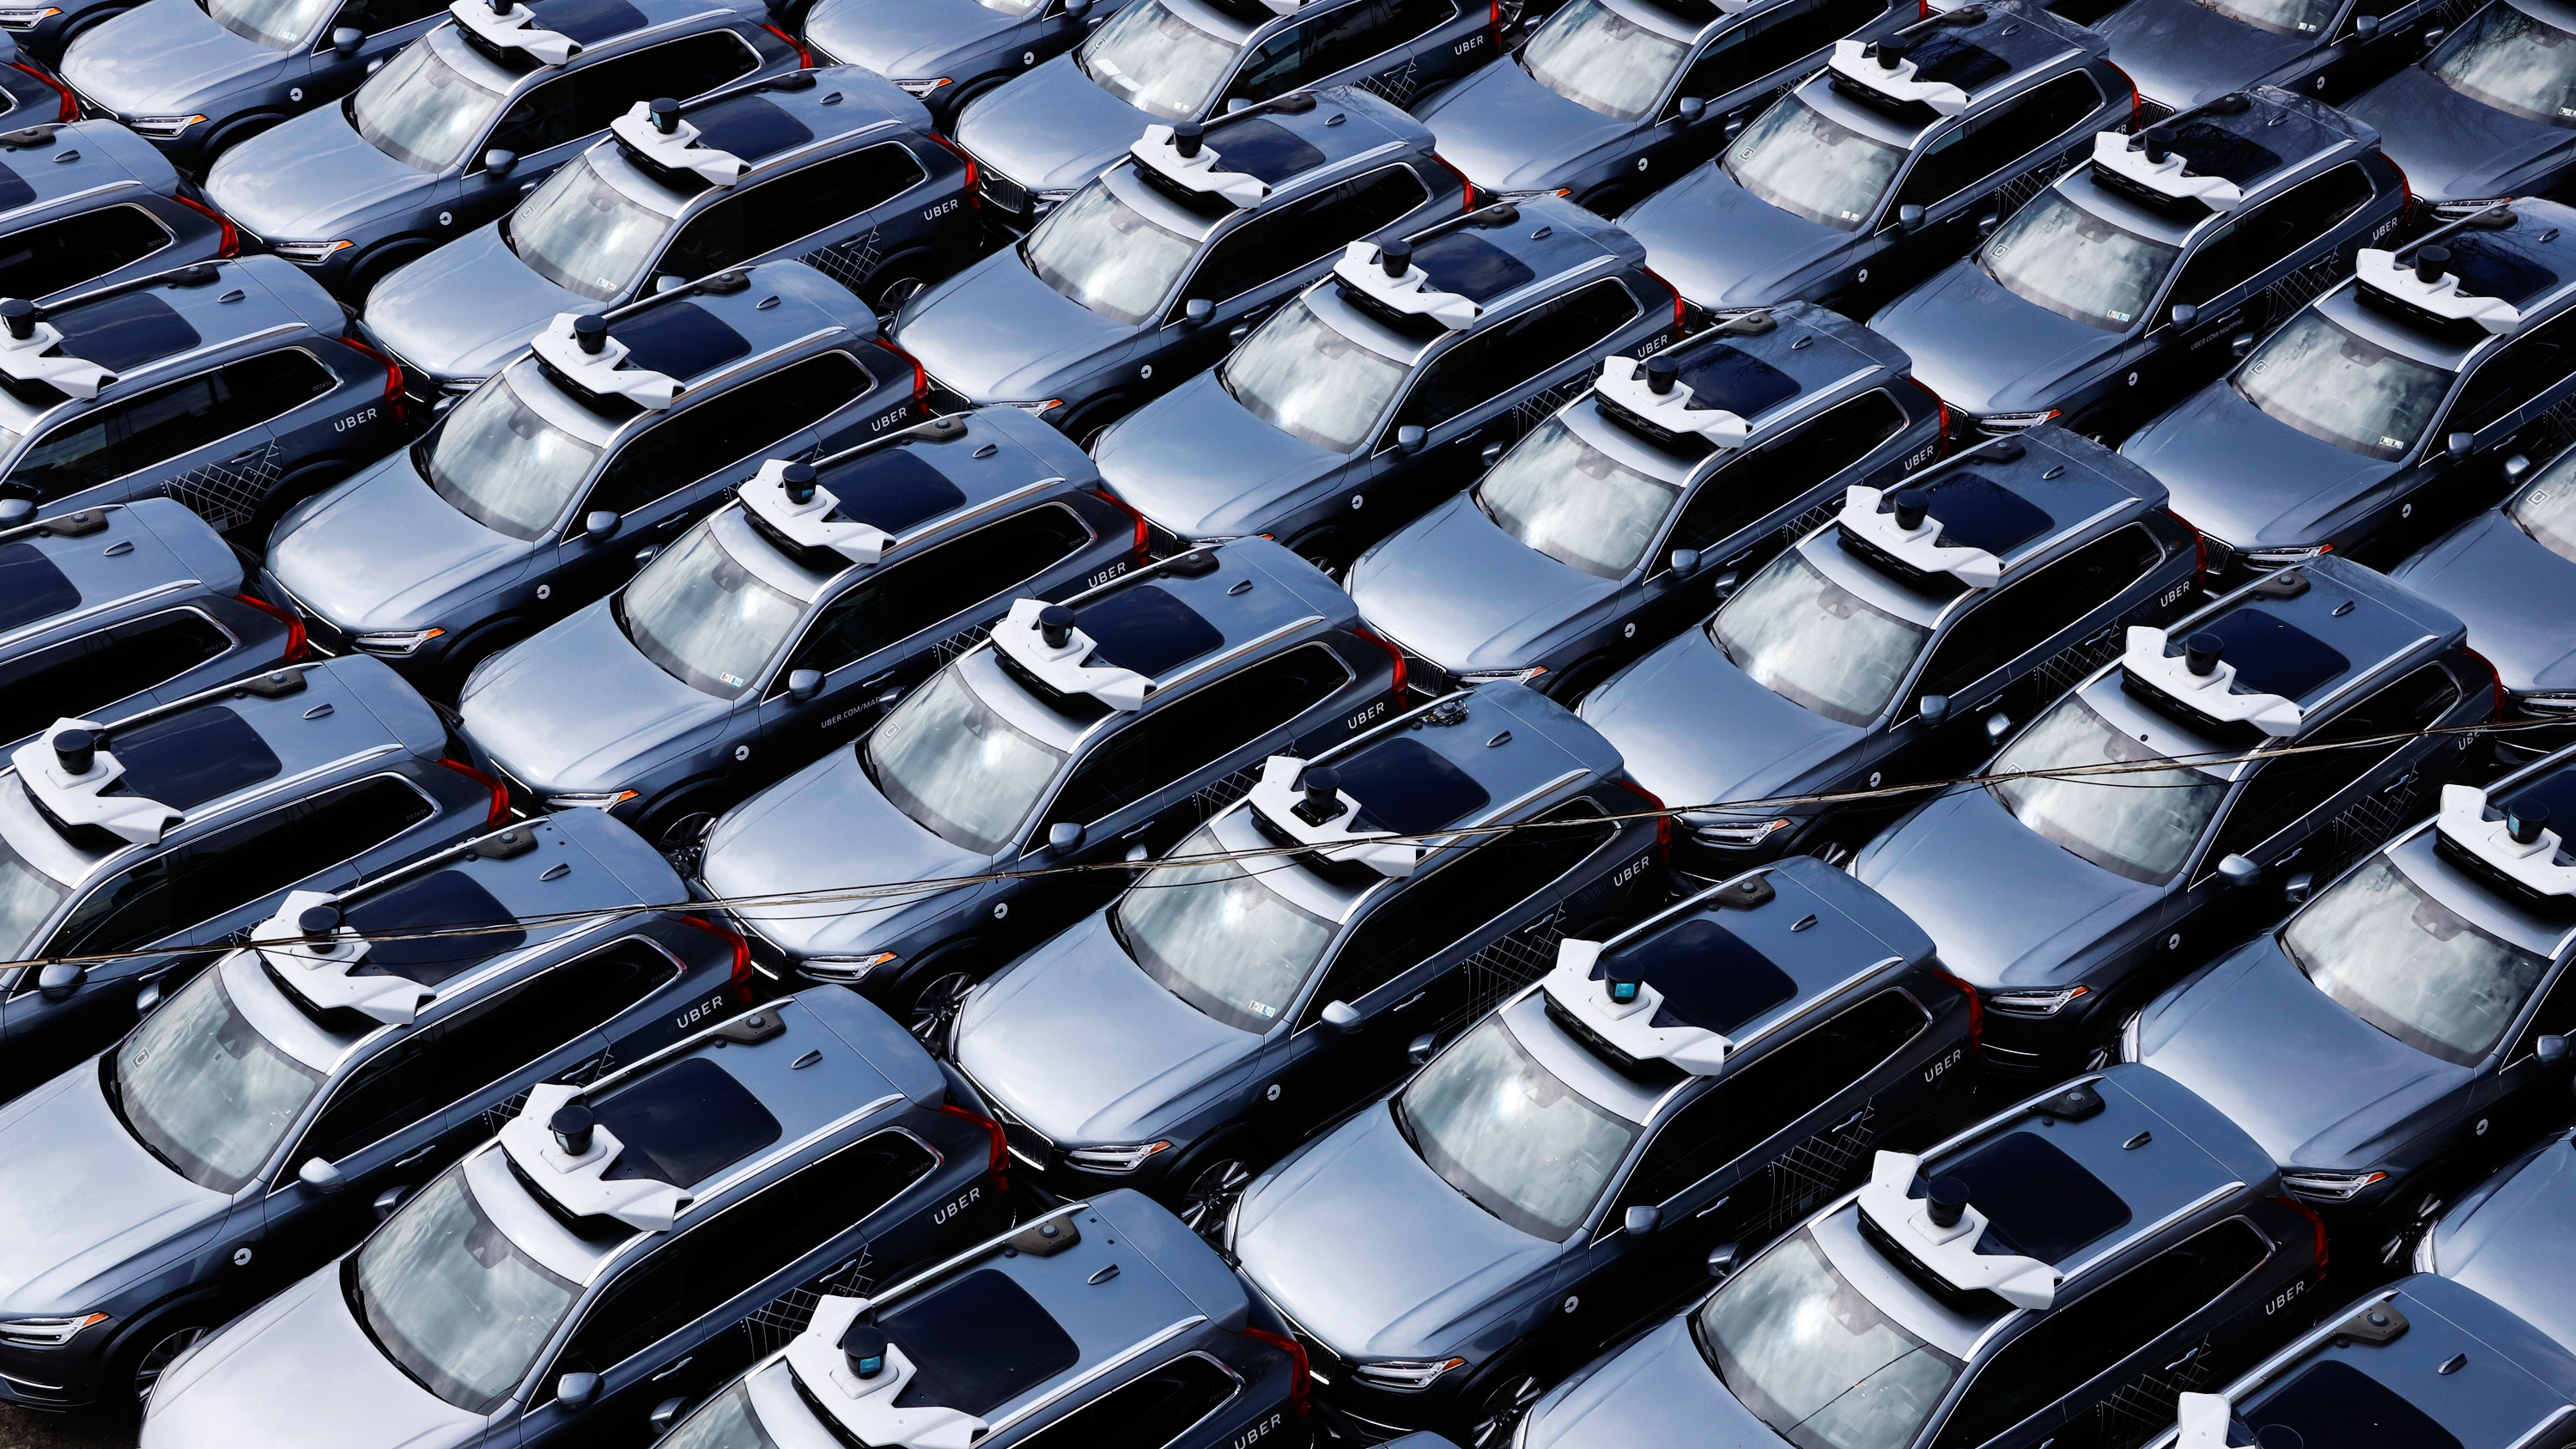 Uber Autonomous Vehicles parked in a lot